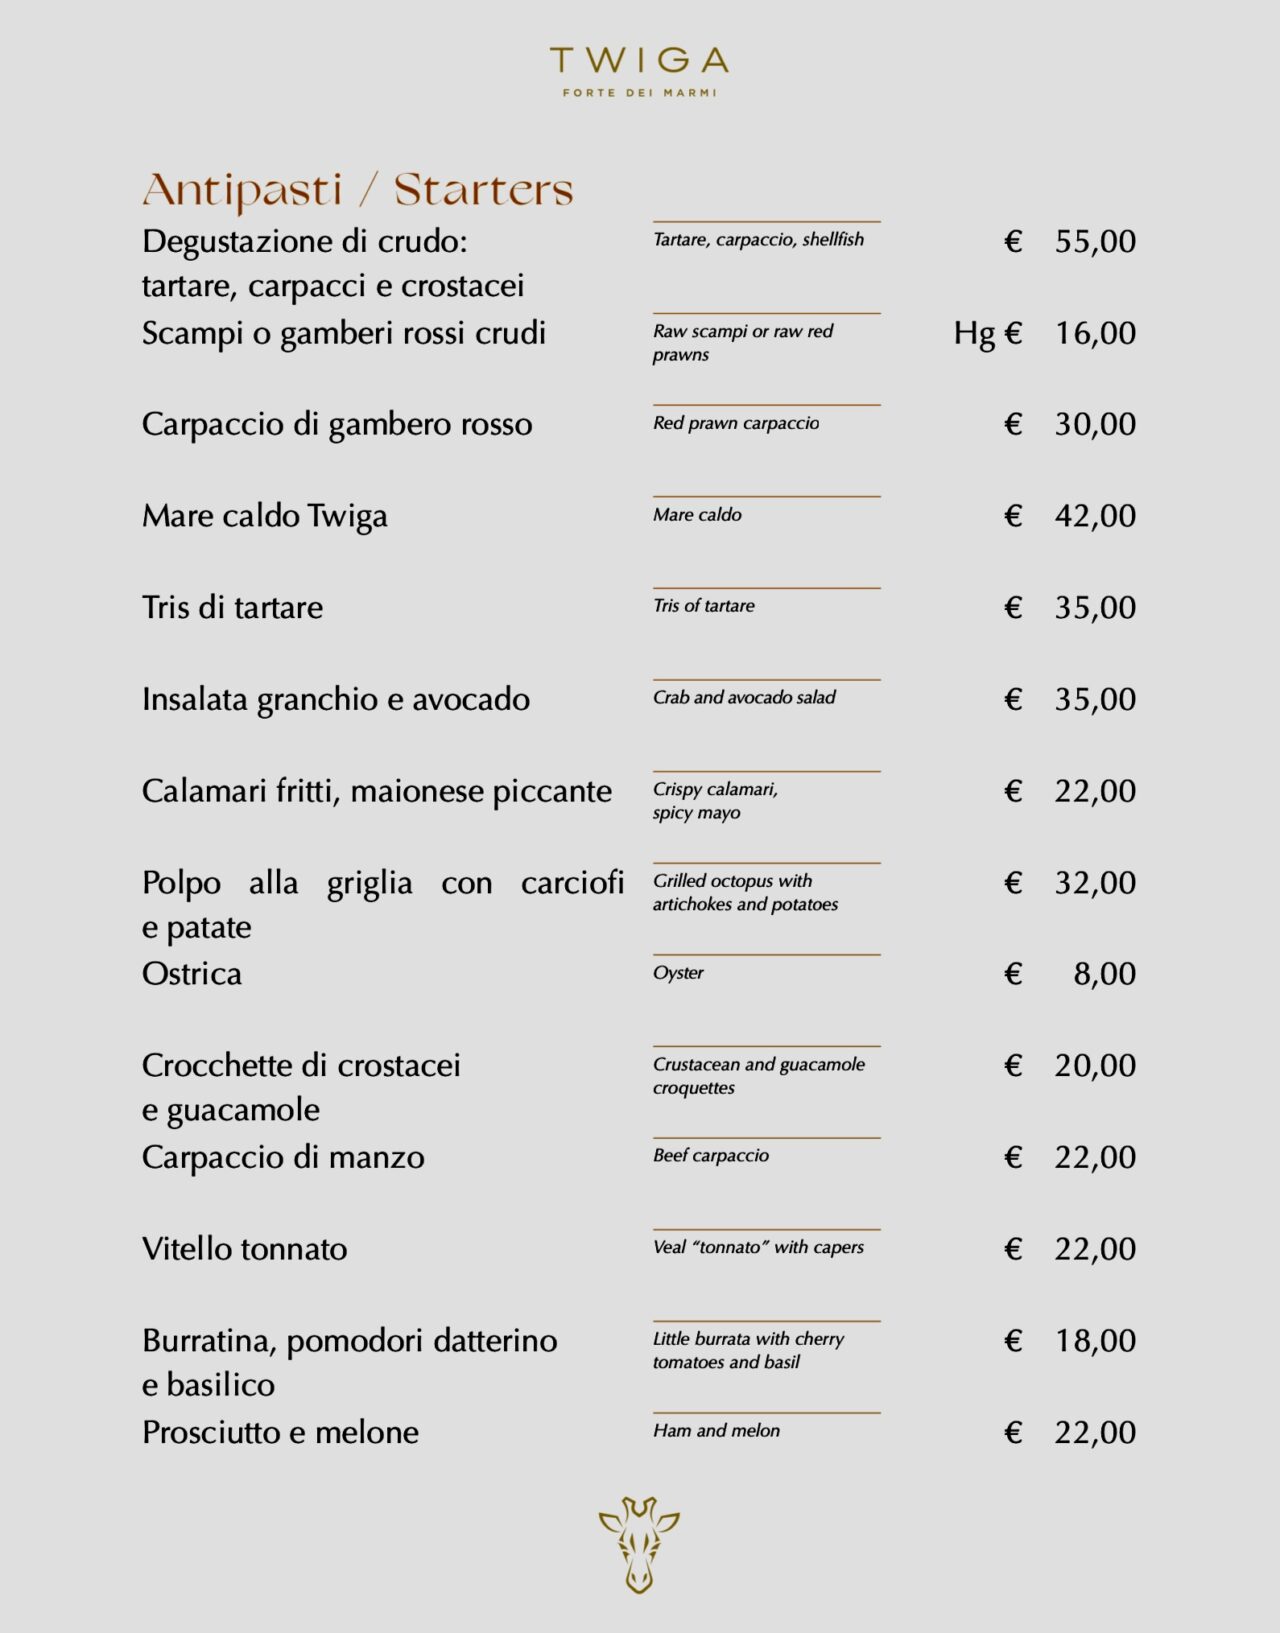 Twiga ristorante menu e prezzi Lunch Menu